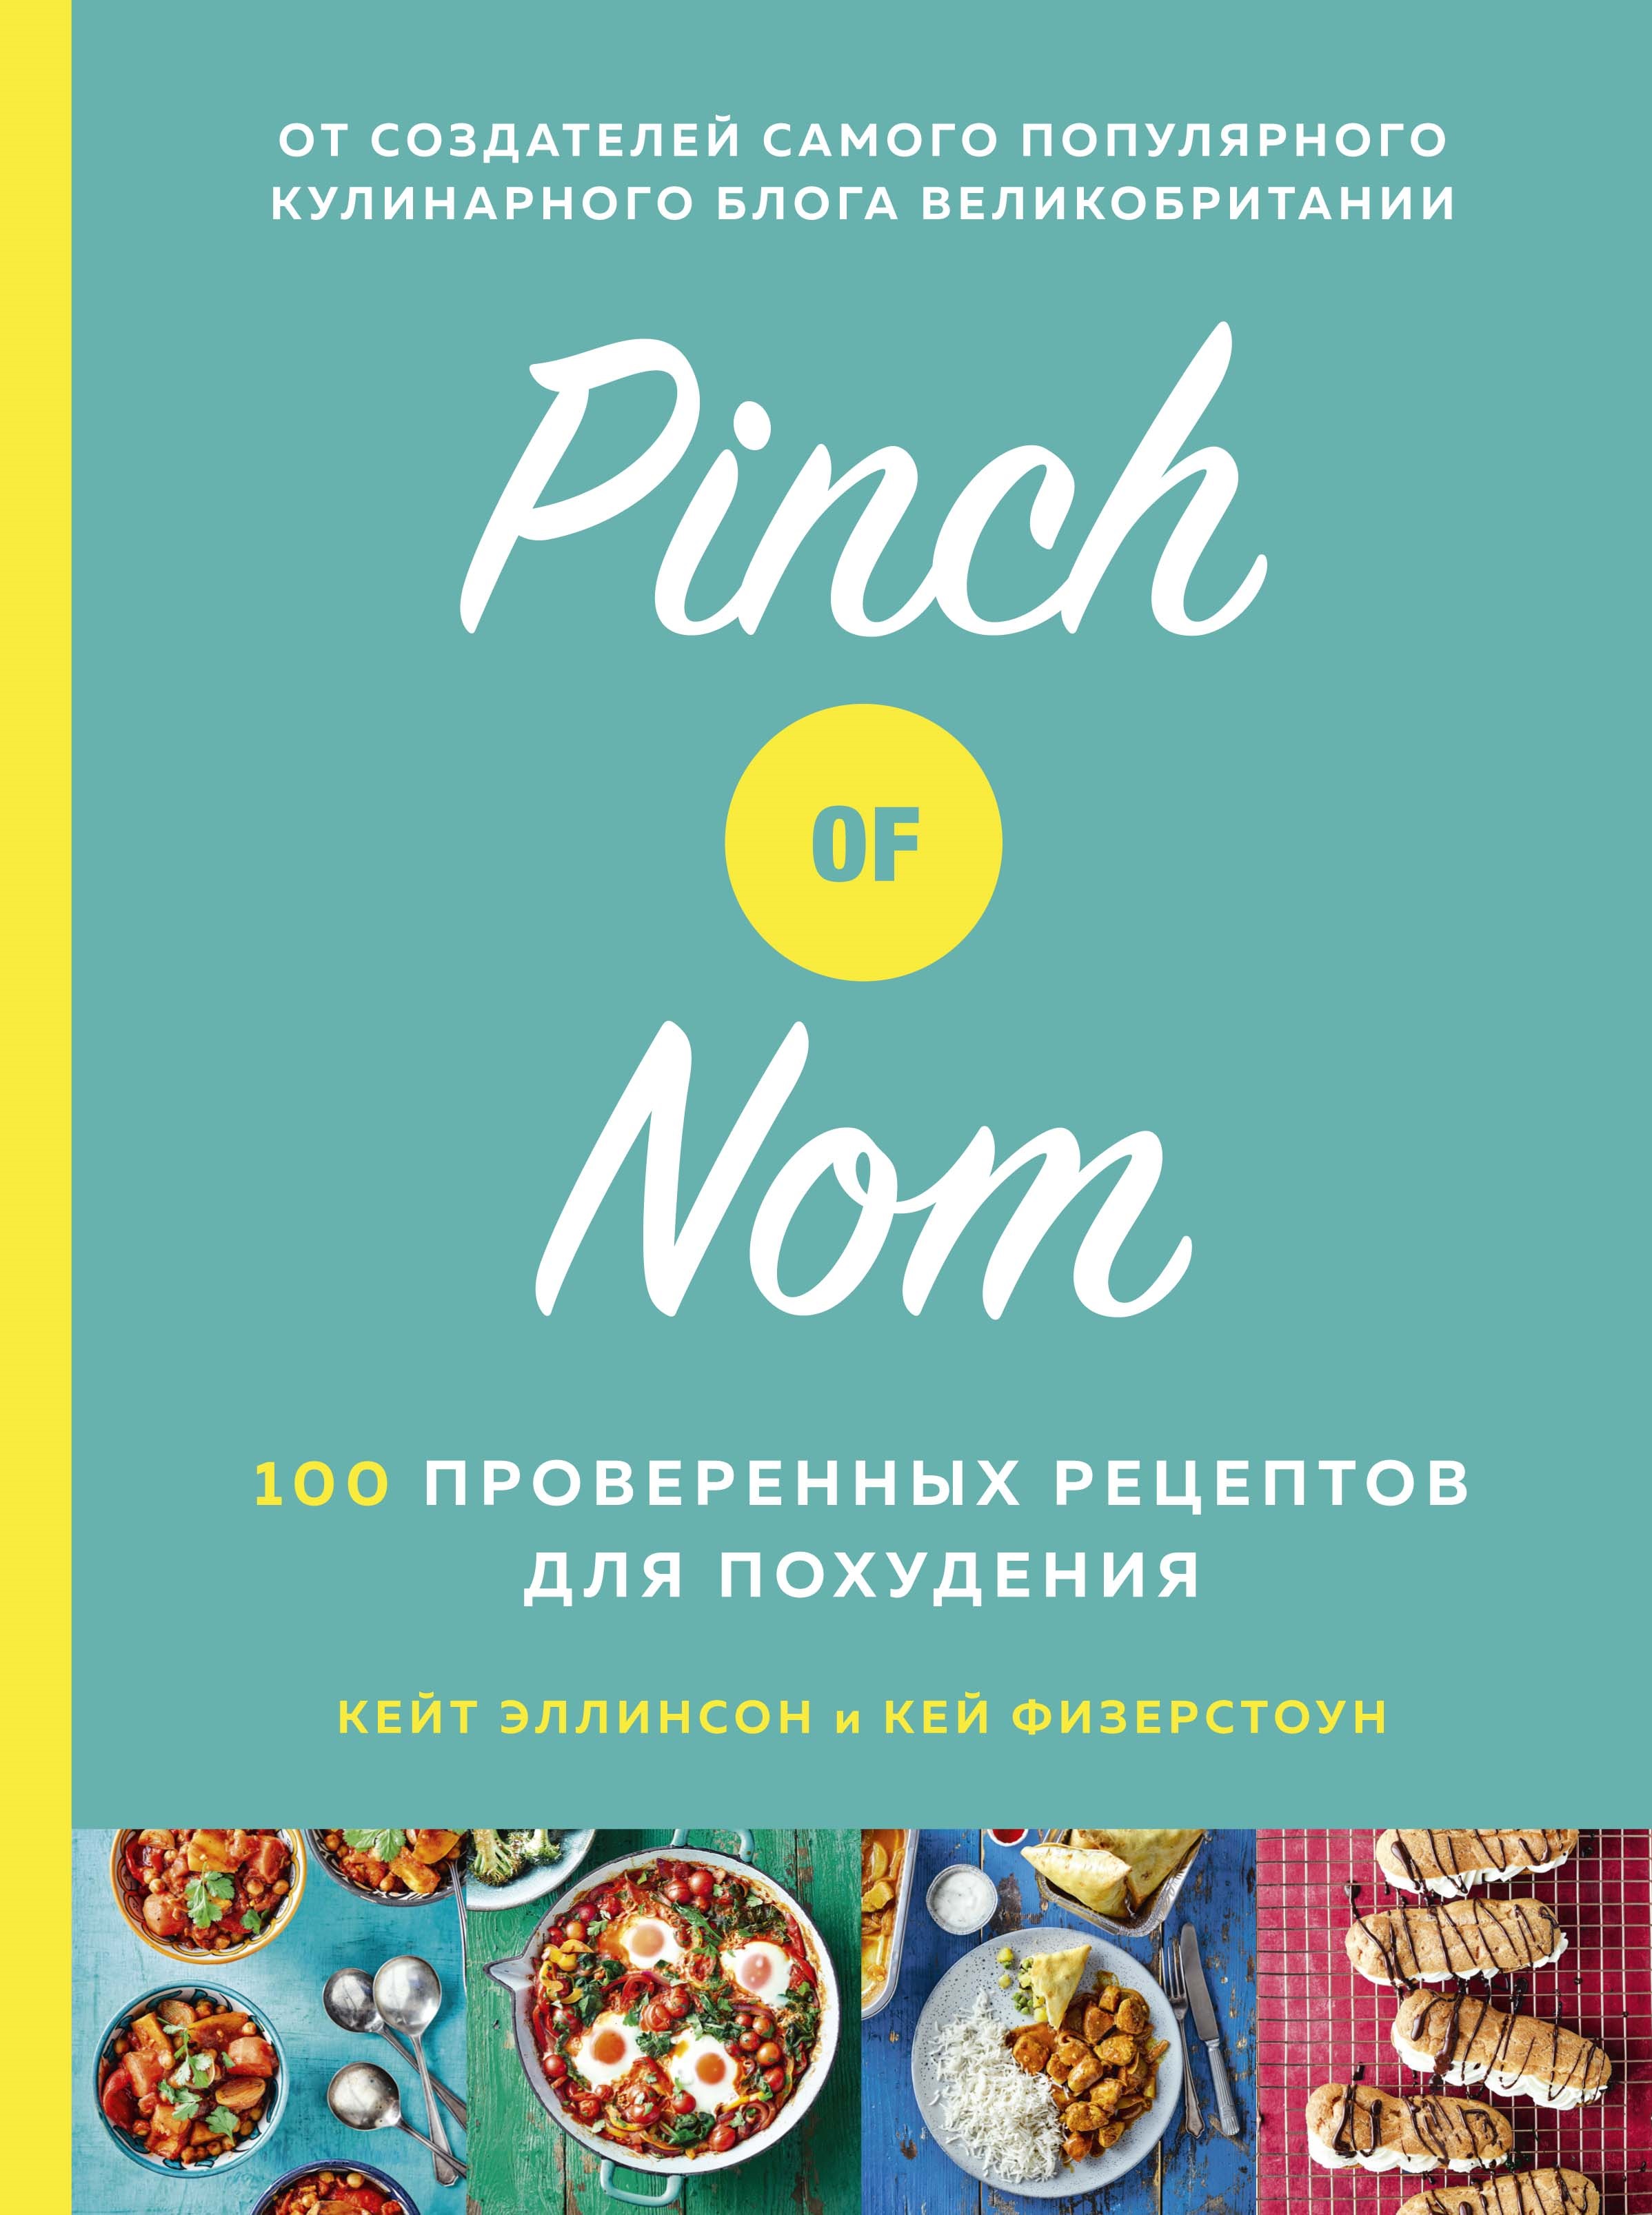 Физерстоун Кей Pinch of Nom: 100 проверенных рецептов для похудения allinson kate физерстоун кей pinch of nom everyday light 100 tasty slimming recipes all under 400 calories